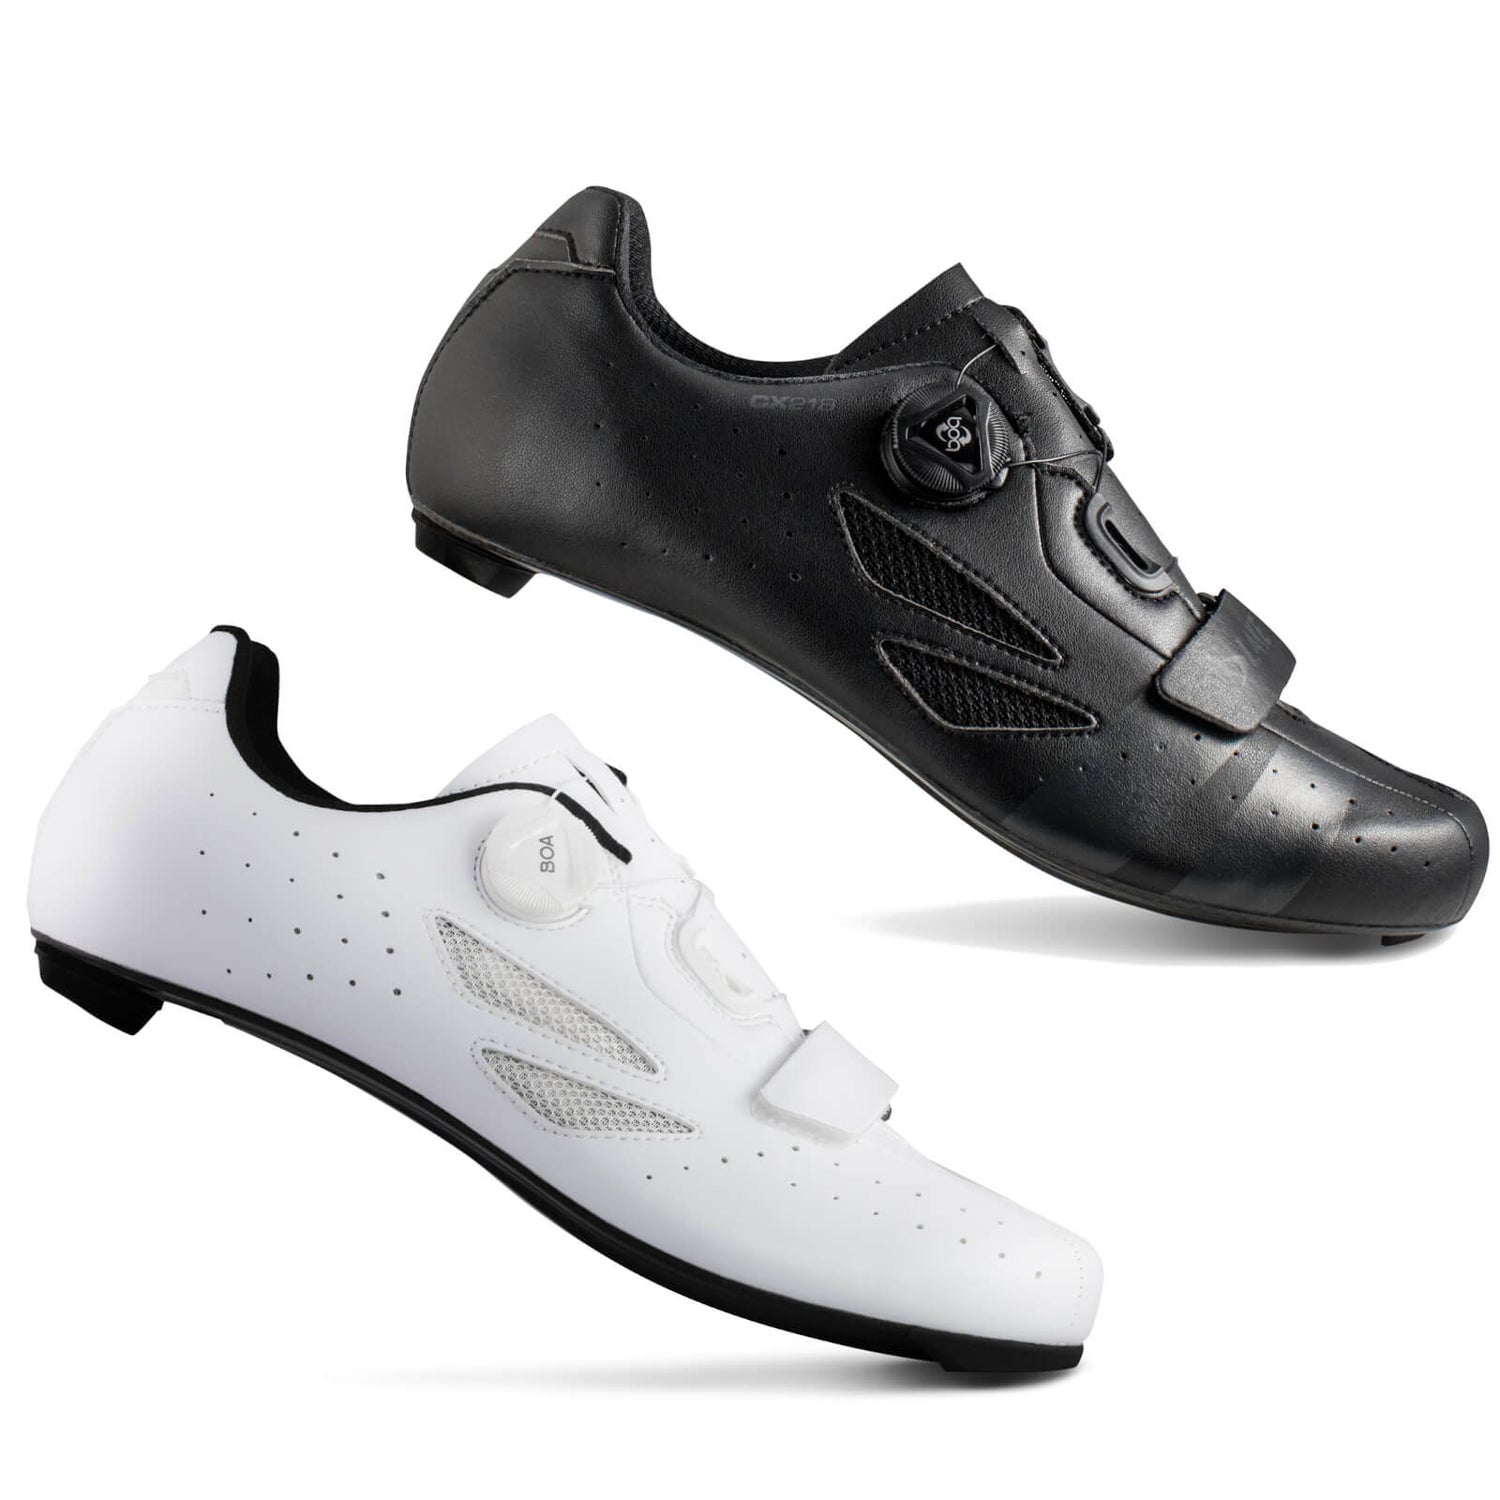 Lake CX Carbon Road Shoes   ProBikeKit.com